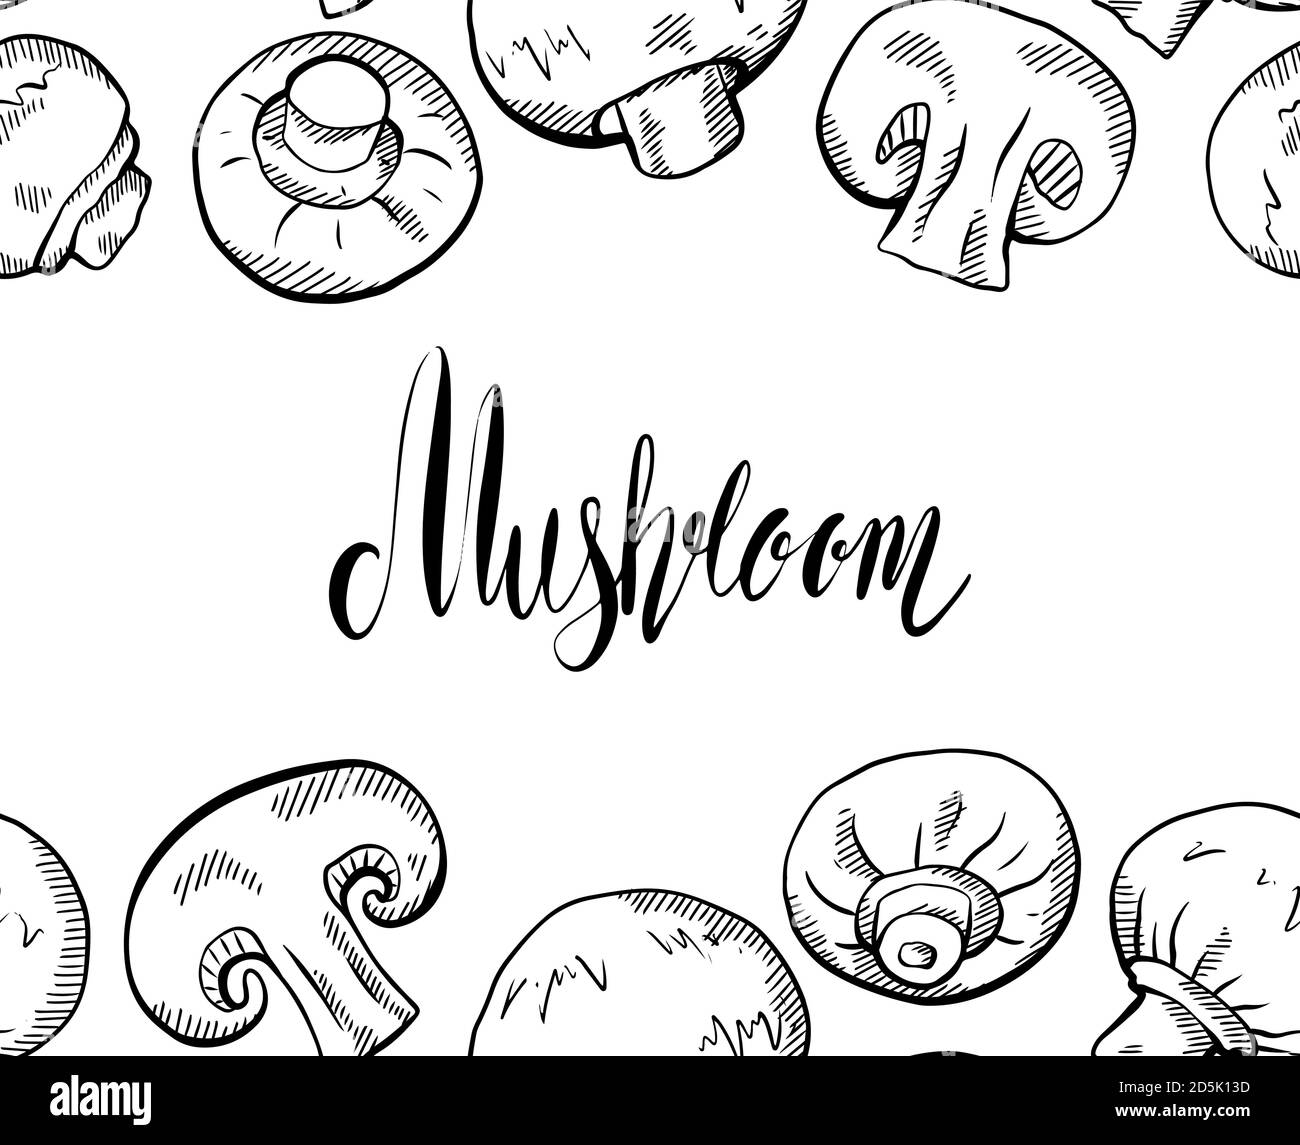 Cartoncino orizzontale con disegno a mano di funghi champignon con tratteggio e scritta. Cibo sano naturale e calligrafia citazione. Scribbl vettore Illustrazione Vettoriale